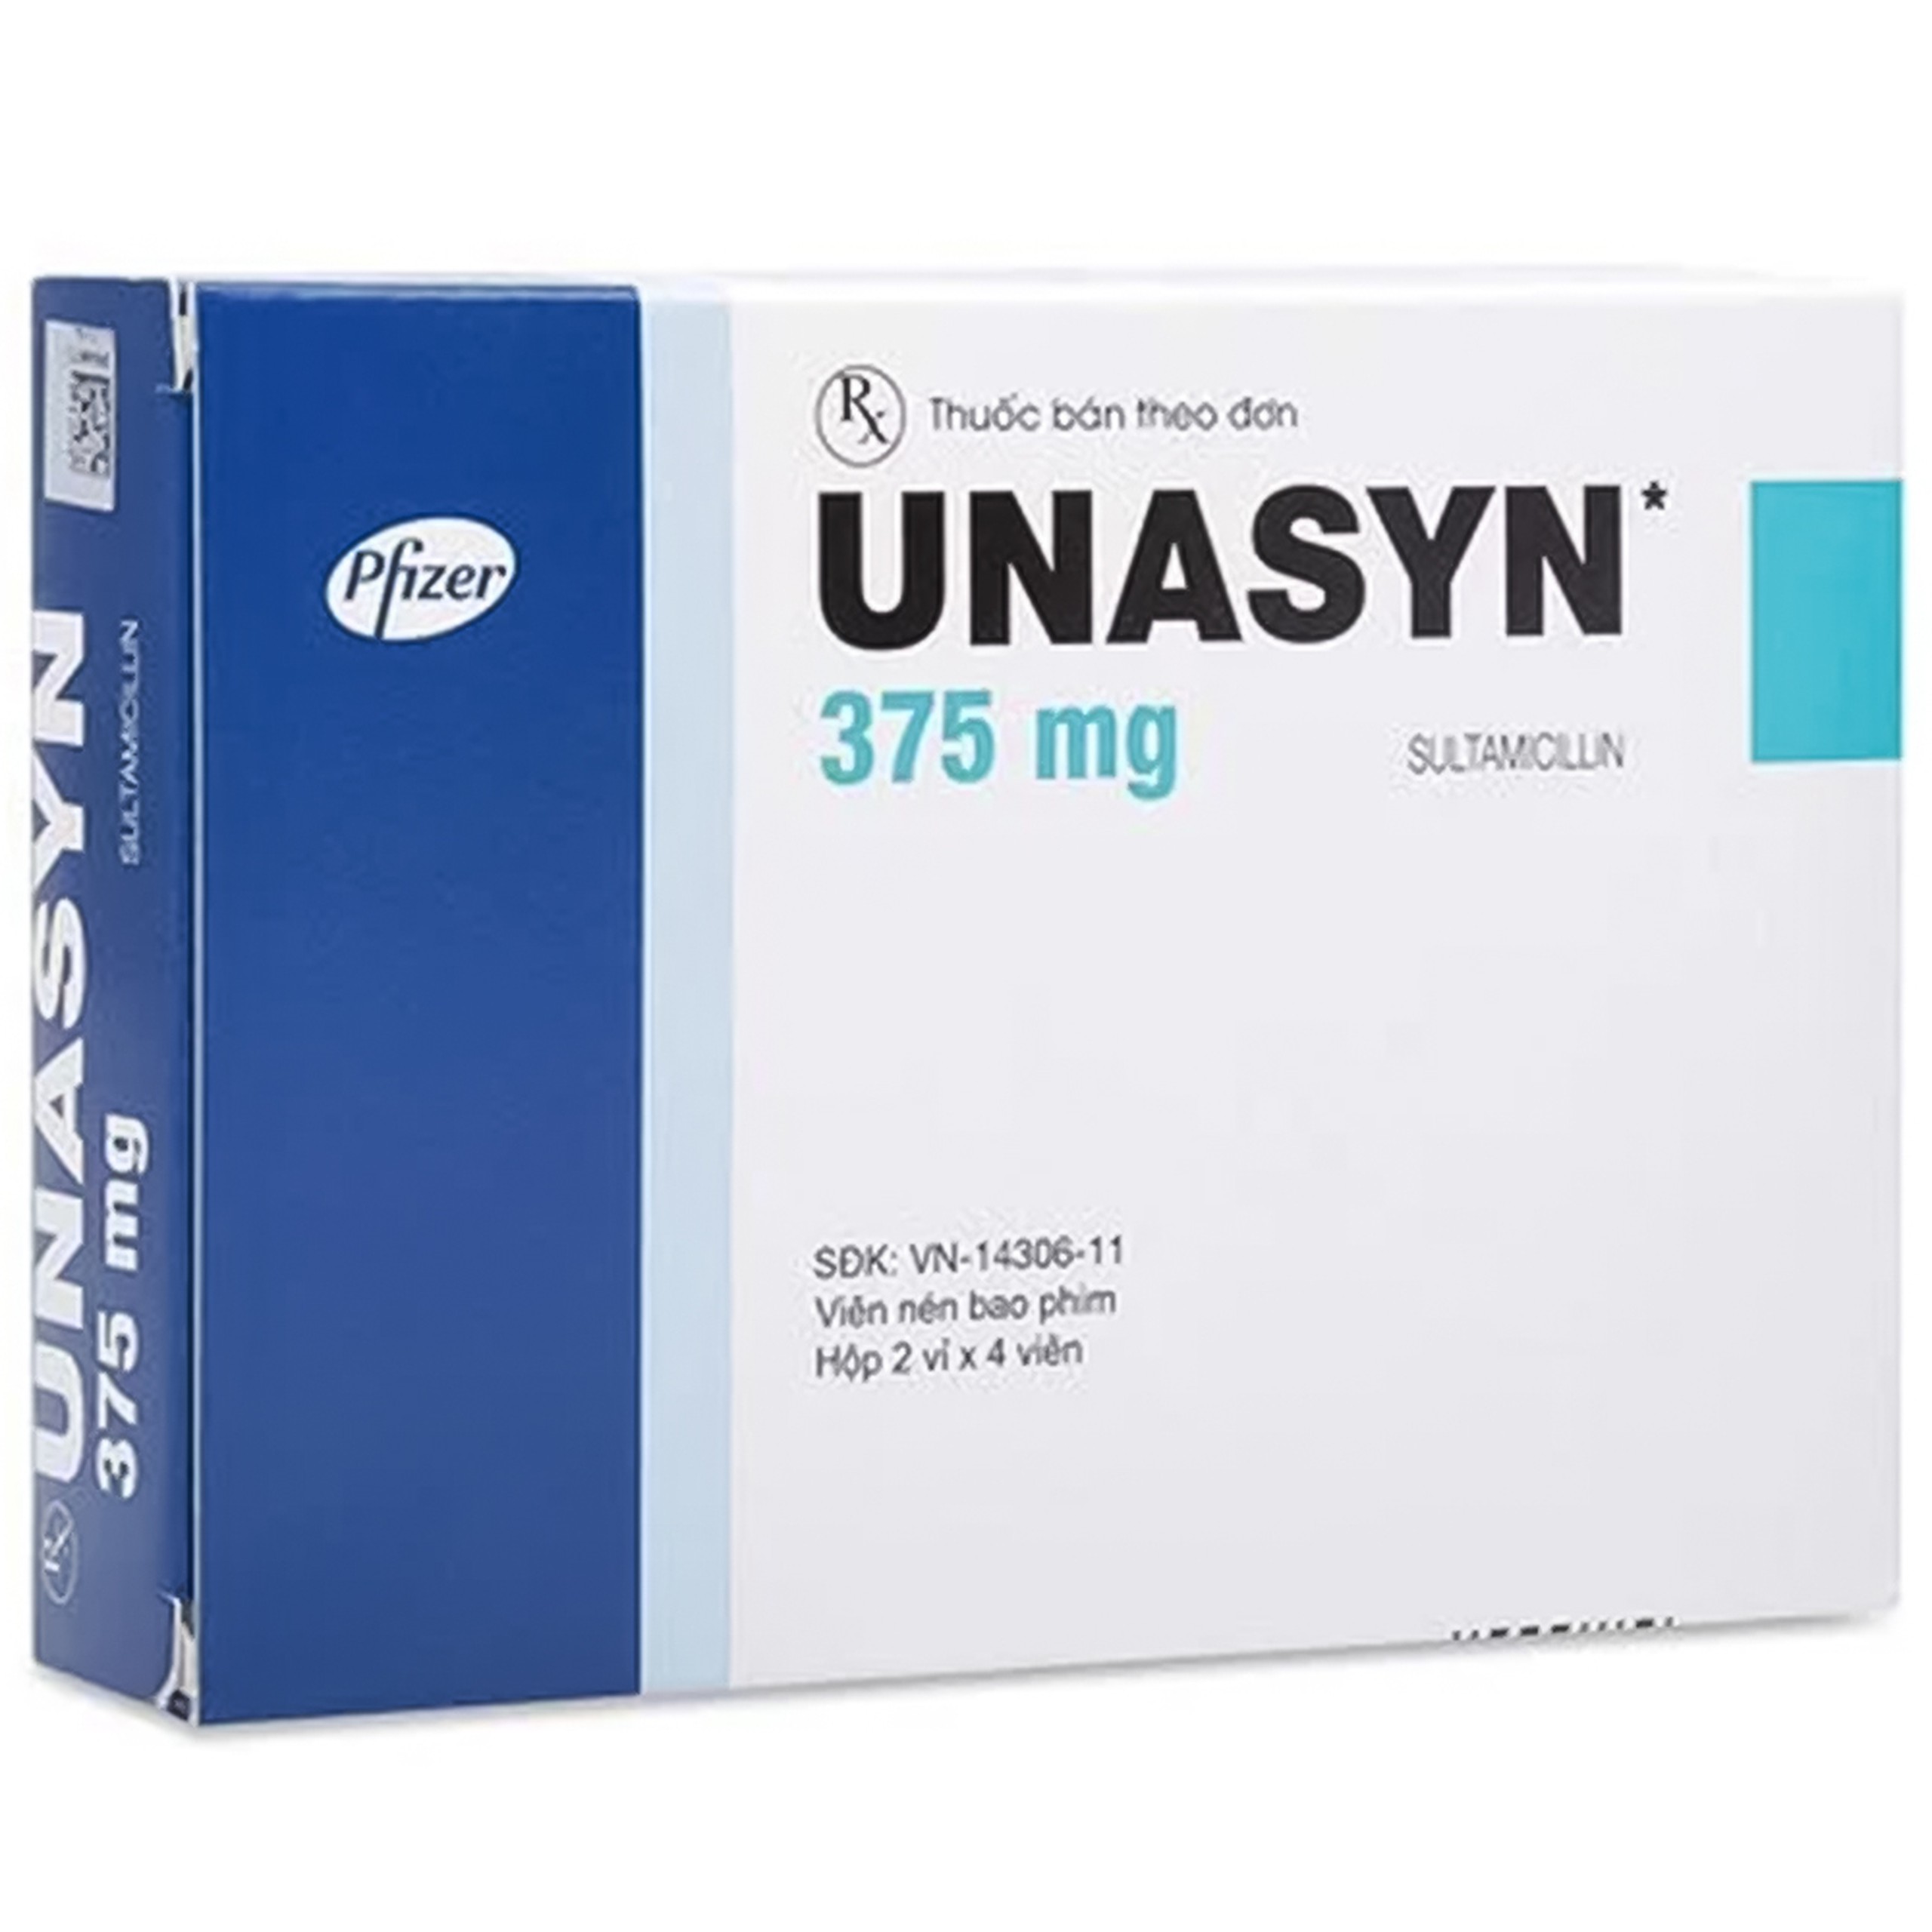 Thuốc Unasyn 375mg Pfizer điều trị các nhiễm khuẩn hô hấp (2 vỉ x 4 viên)